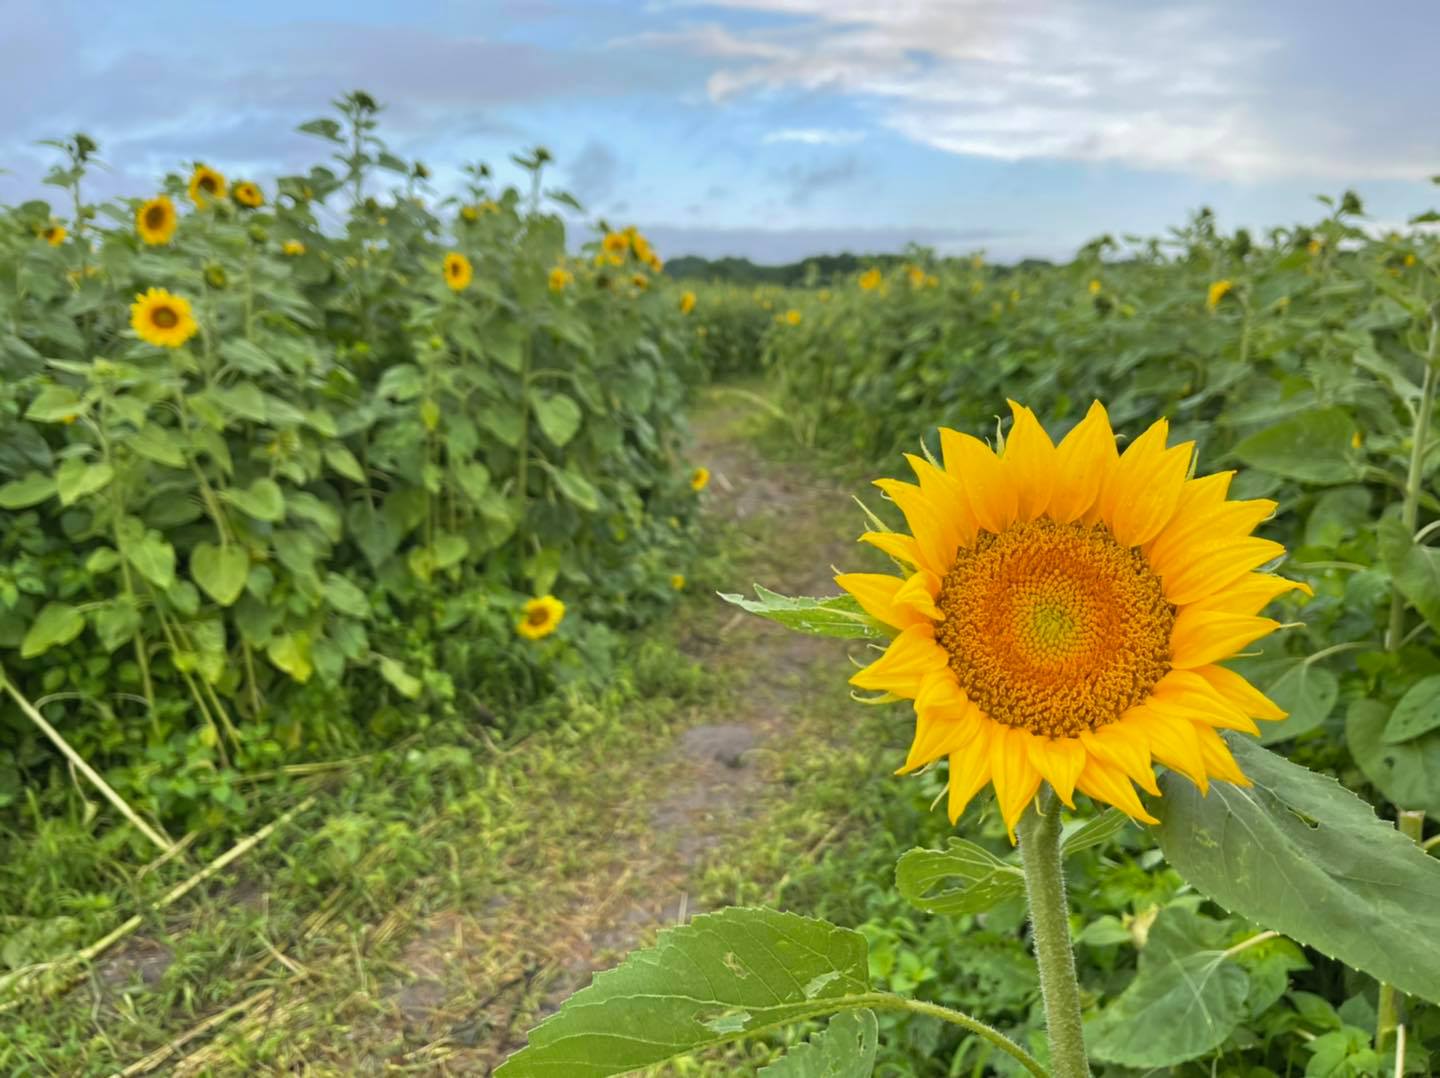 U-pick farms in Tampa Bay - sunflowers at Hunsader Farms in Bradenton, FL